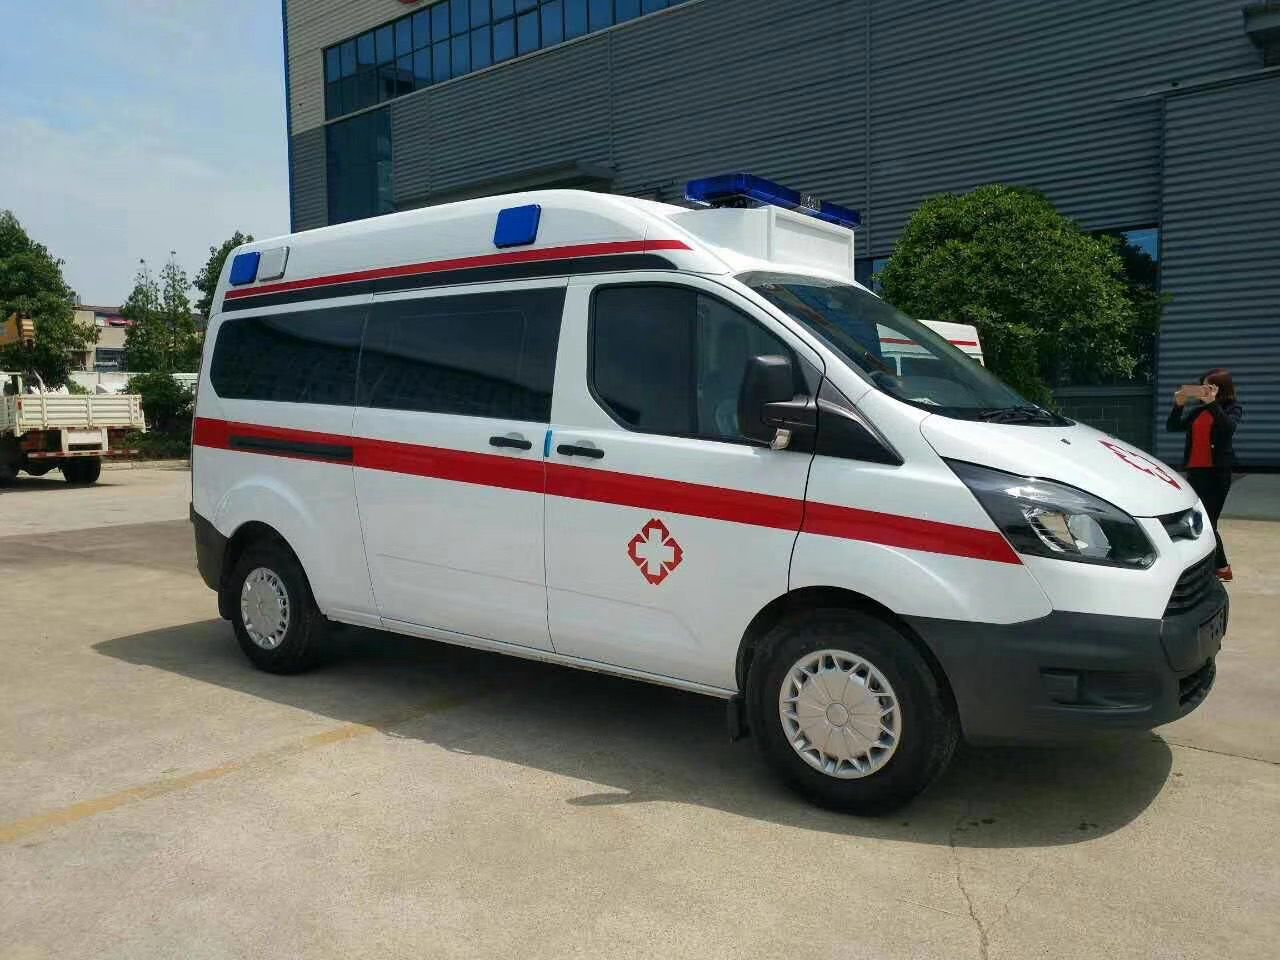 青阳县出院转院救护车